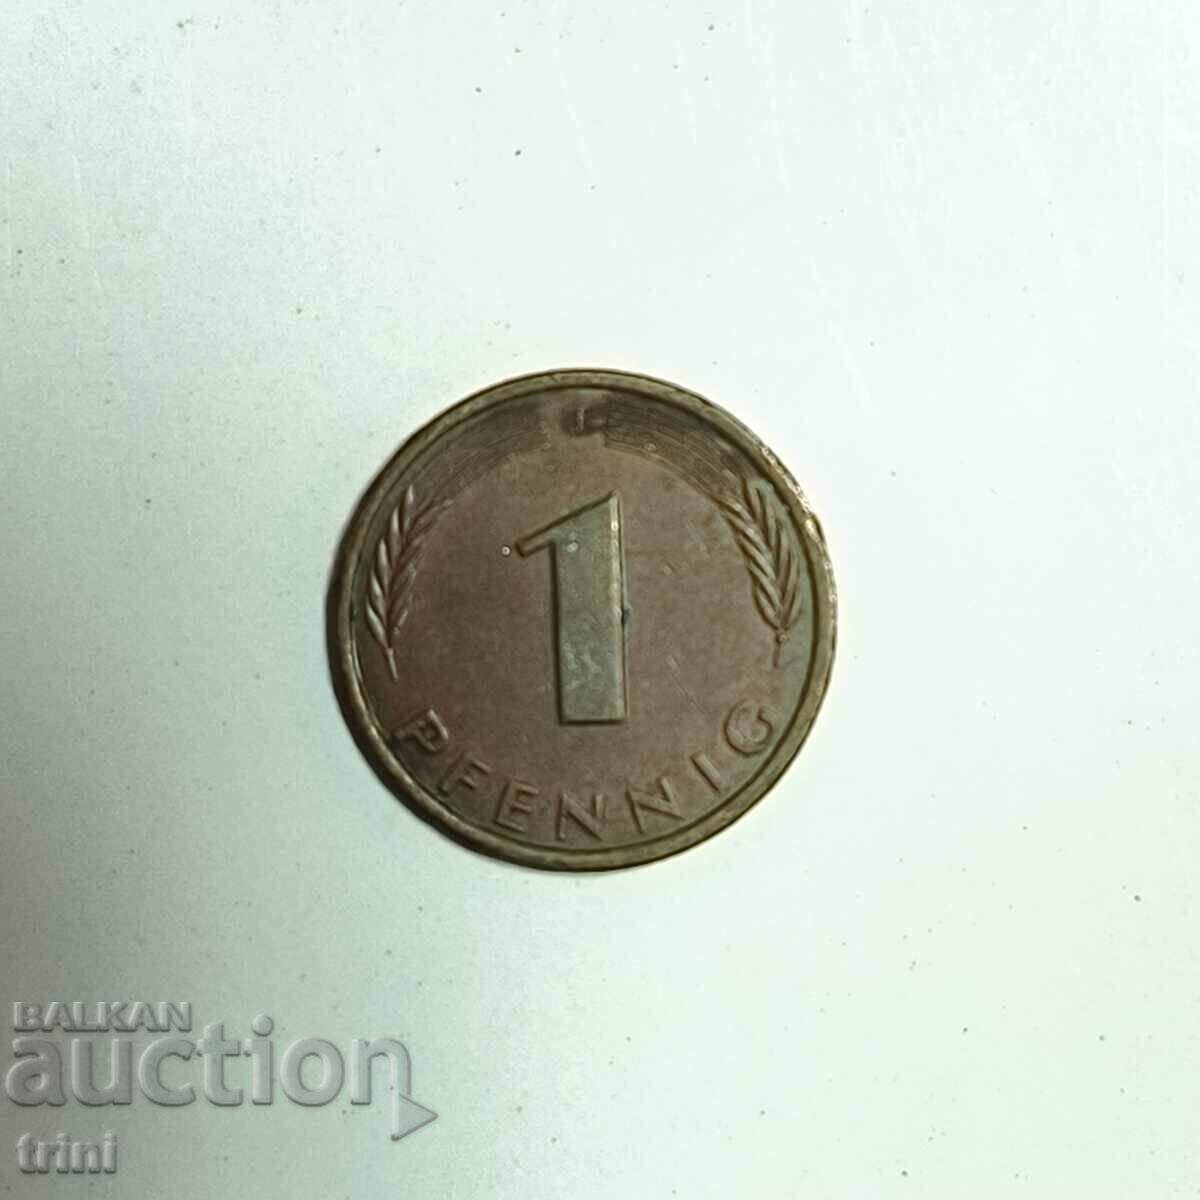 Γερμανία 1 pfennig 1985 έτος 'F' - Στουτγάρδη e184